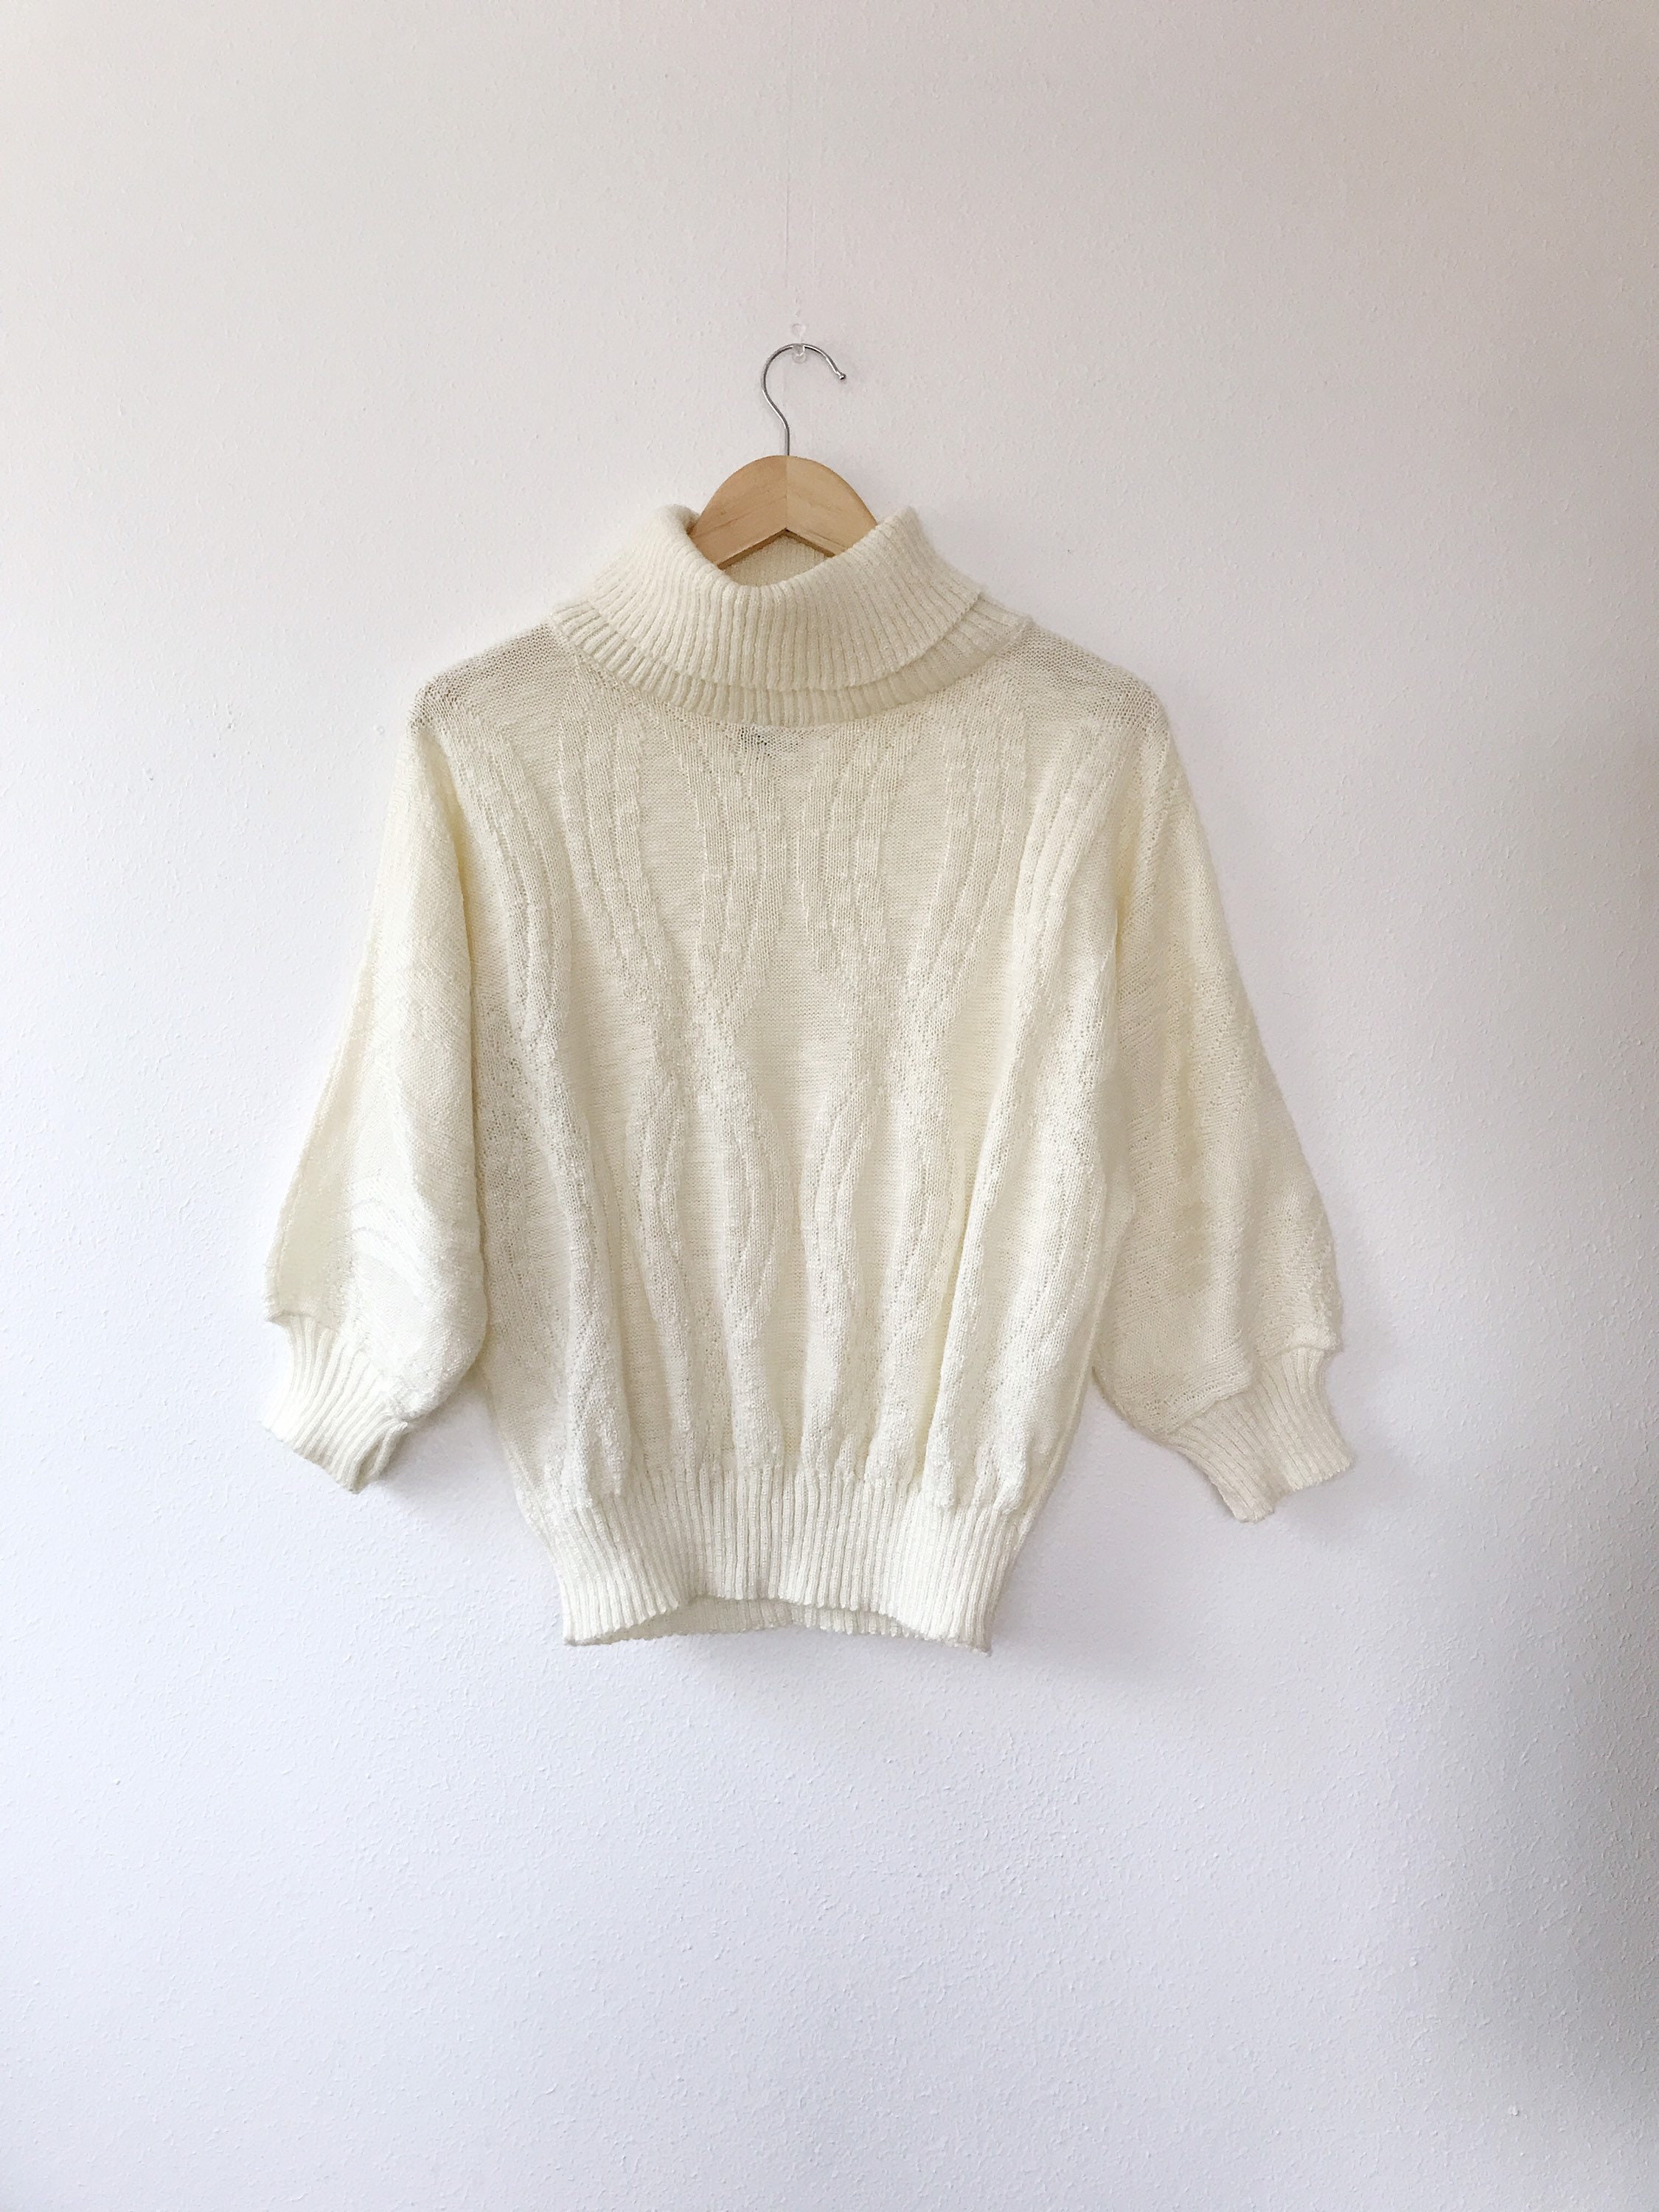 80s sweater / vintage knit sweater / 80s Turtleneck dolman sweater